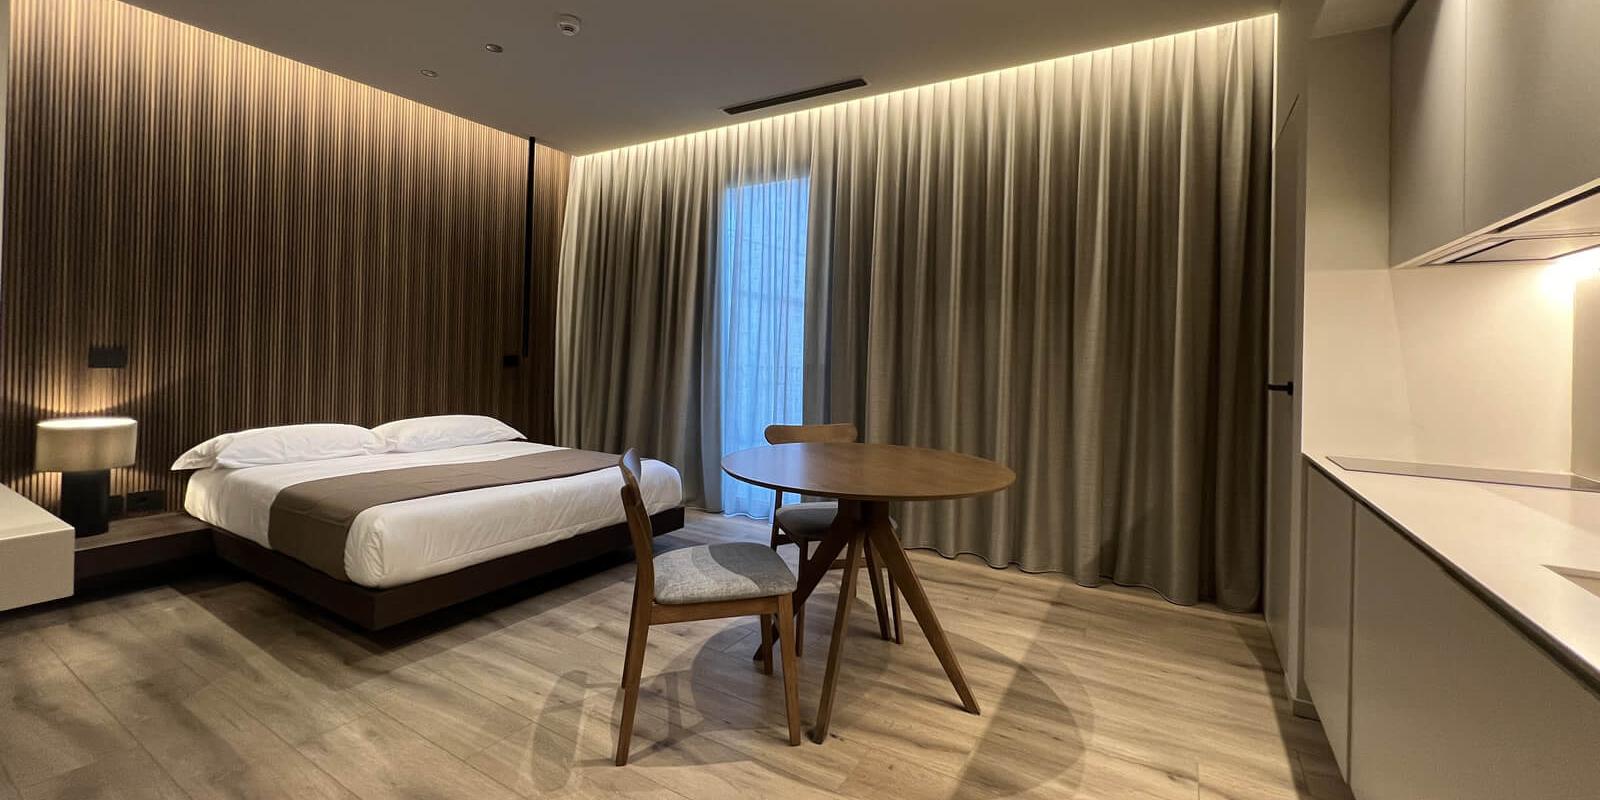 Camera da letto moderna con letto, tavolo rotondo e lampade eleganti.